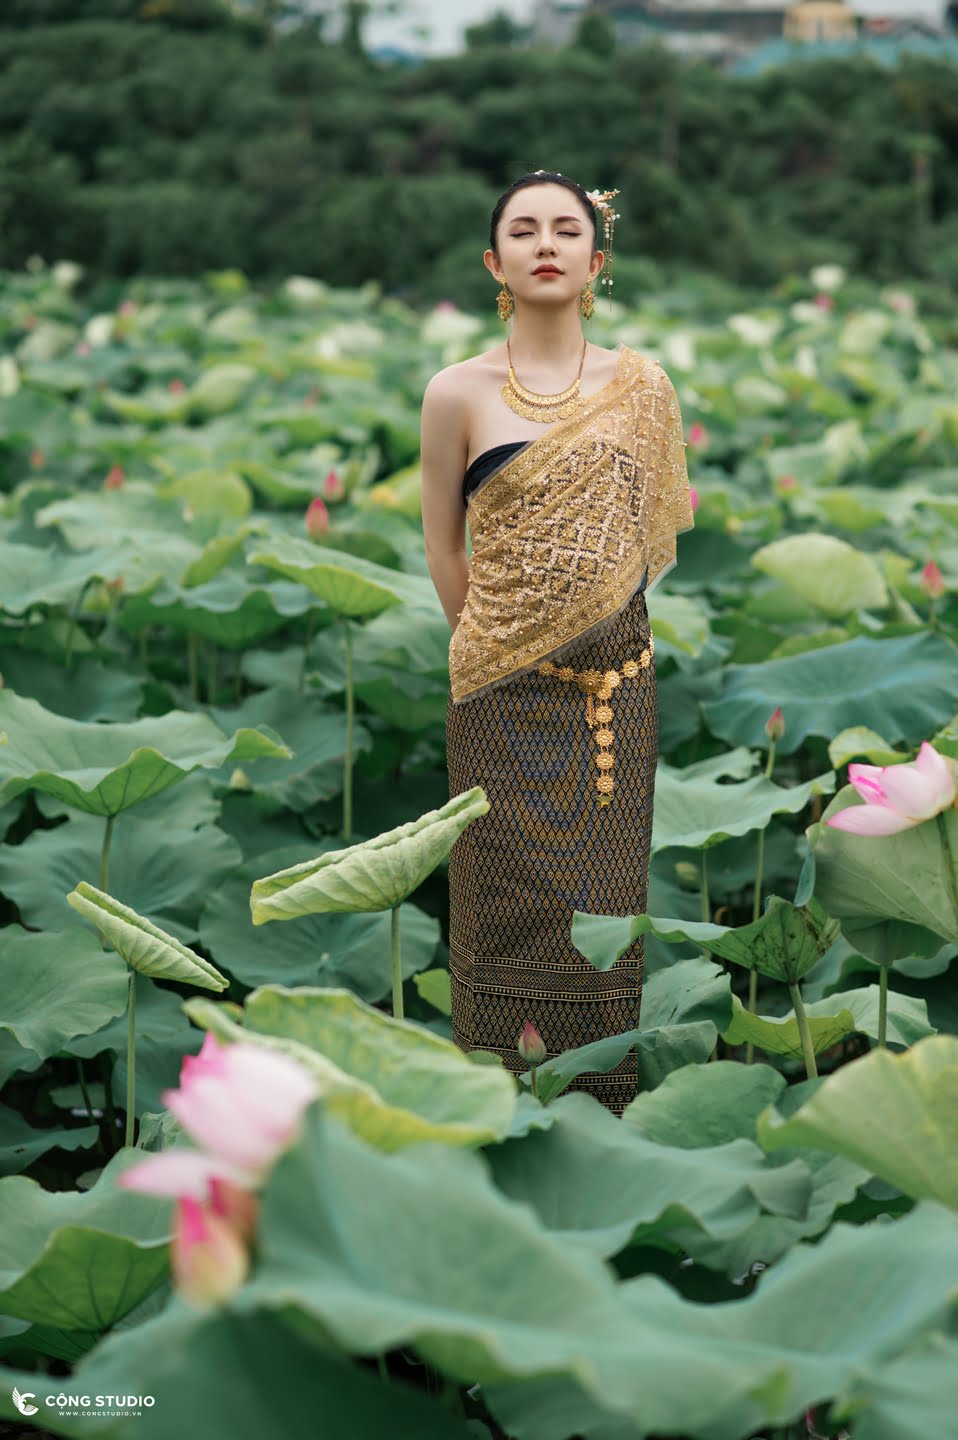 Chụp ảnh sen hồ tây concept thái lan đẹp, chuyên nghiệp, giá rẻ (25)